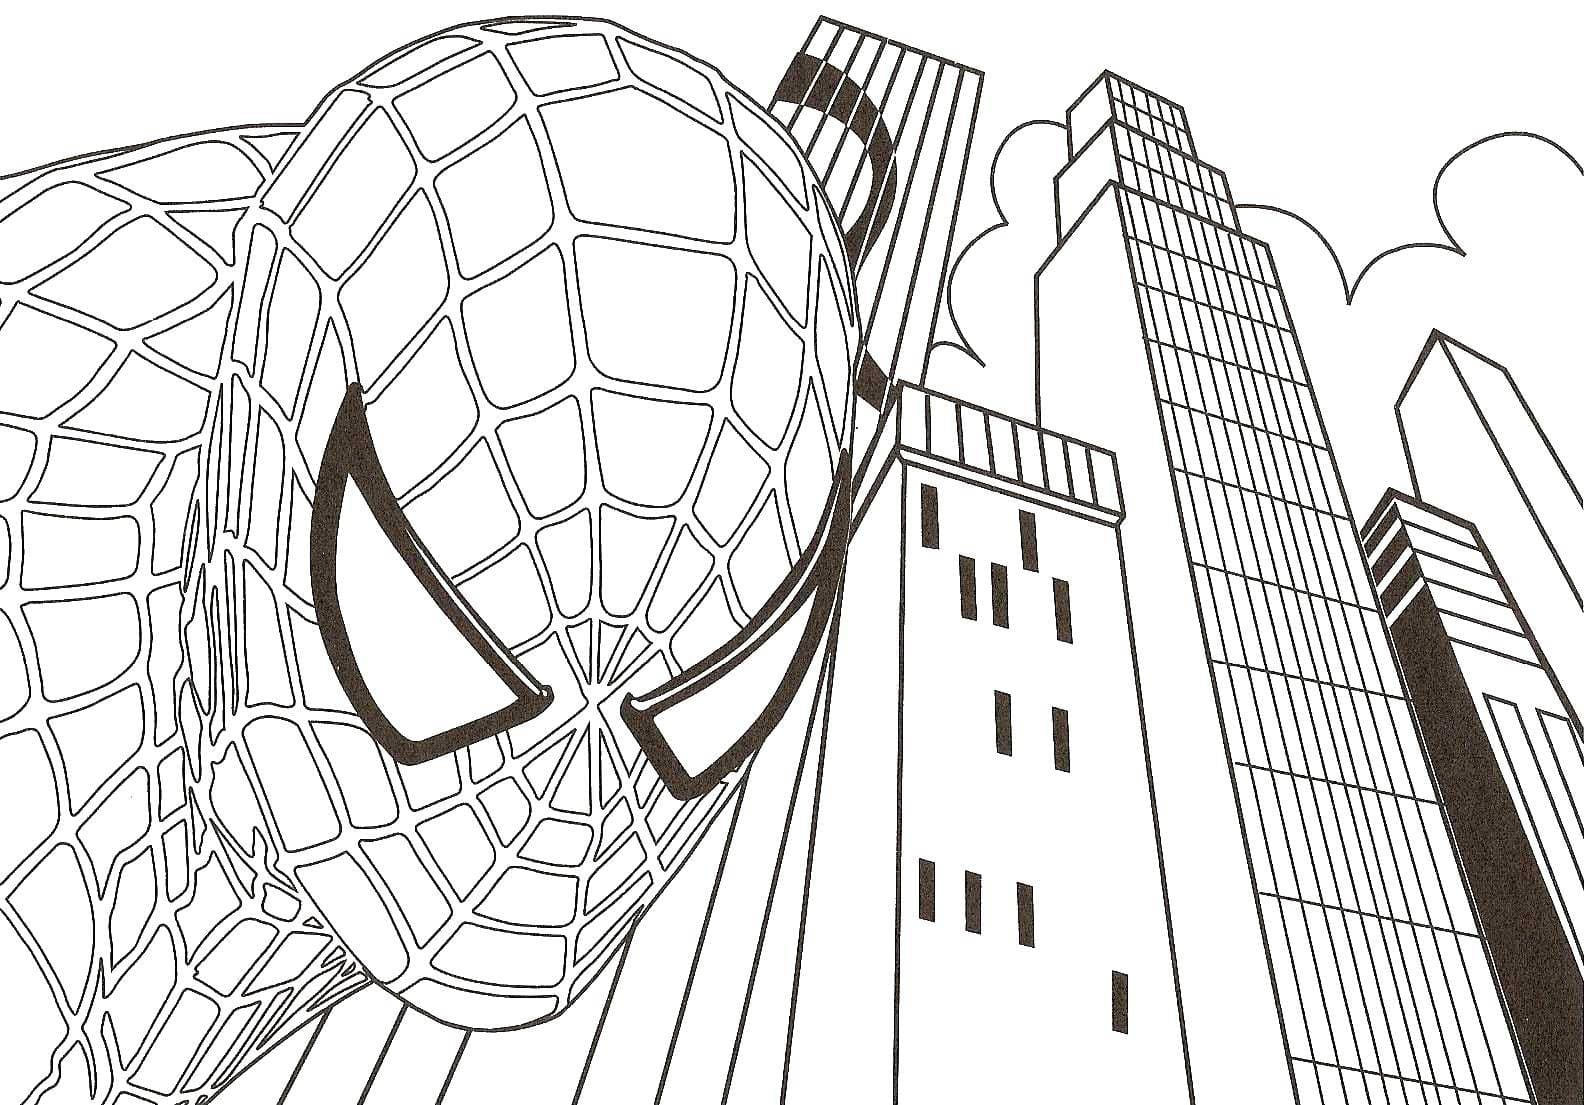 Ausmalbilder Spiderman. Drucken Spiderman Zum Ausmalen bestimmt für Malvorlage Spiderman